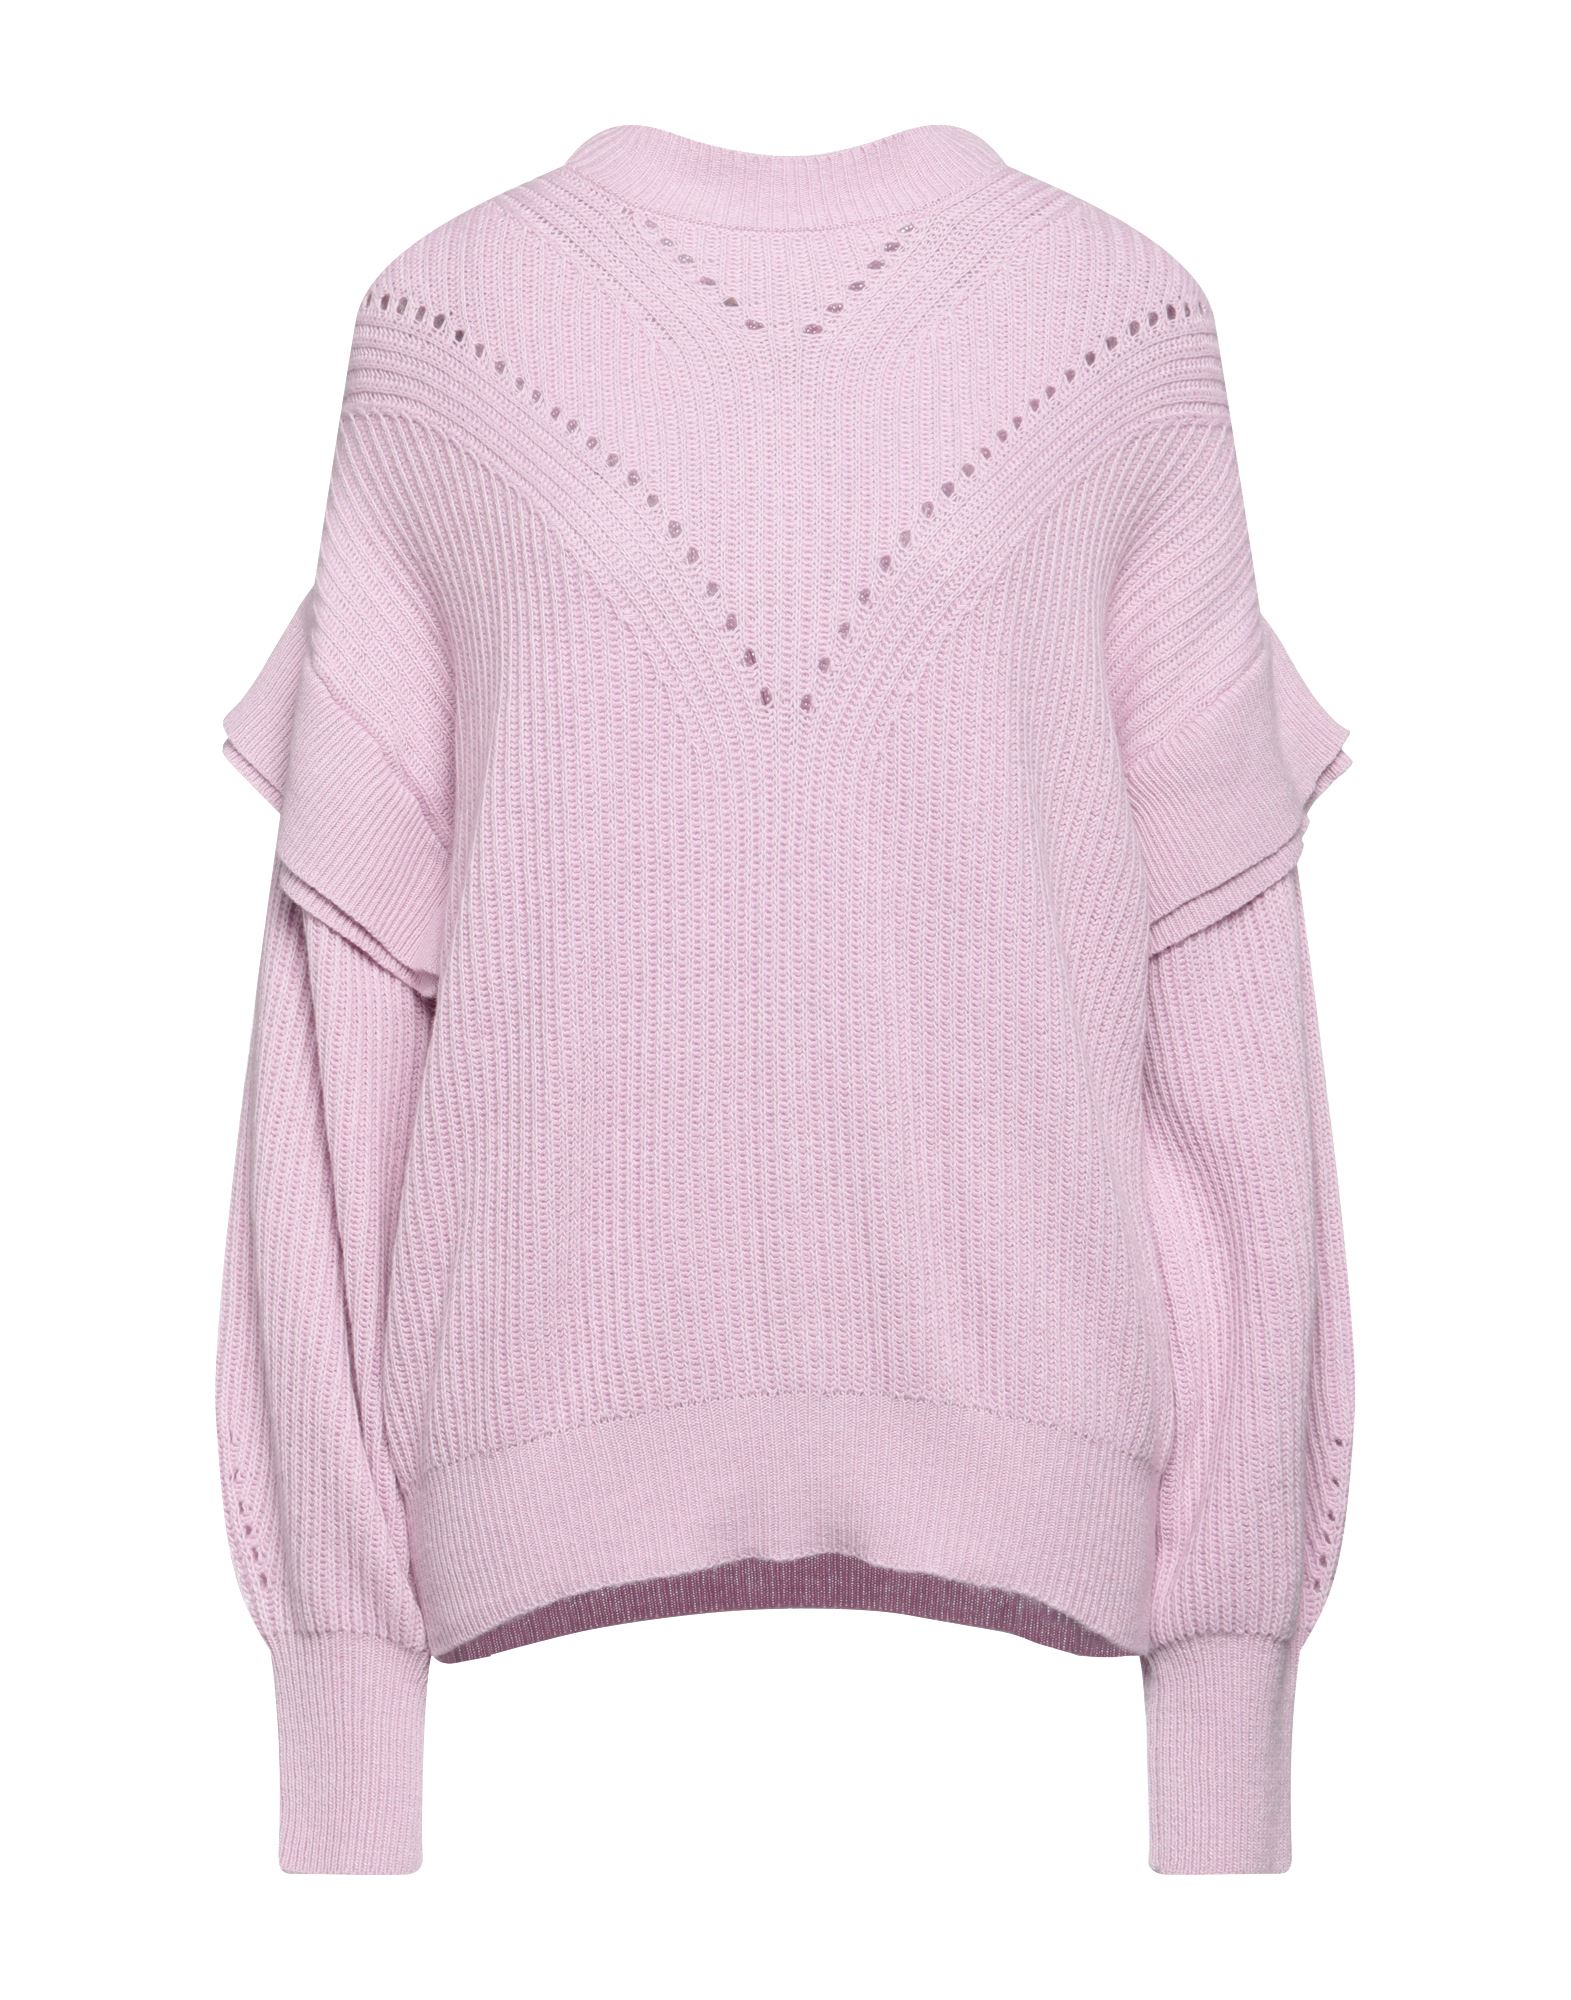 N.o.w. Andrea Rosati Cashmere Sweaters In Purple